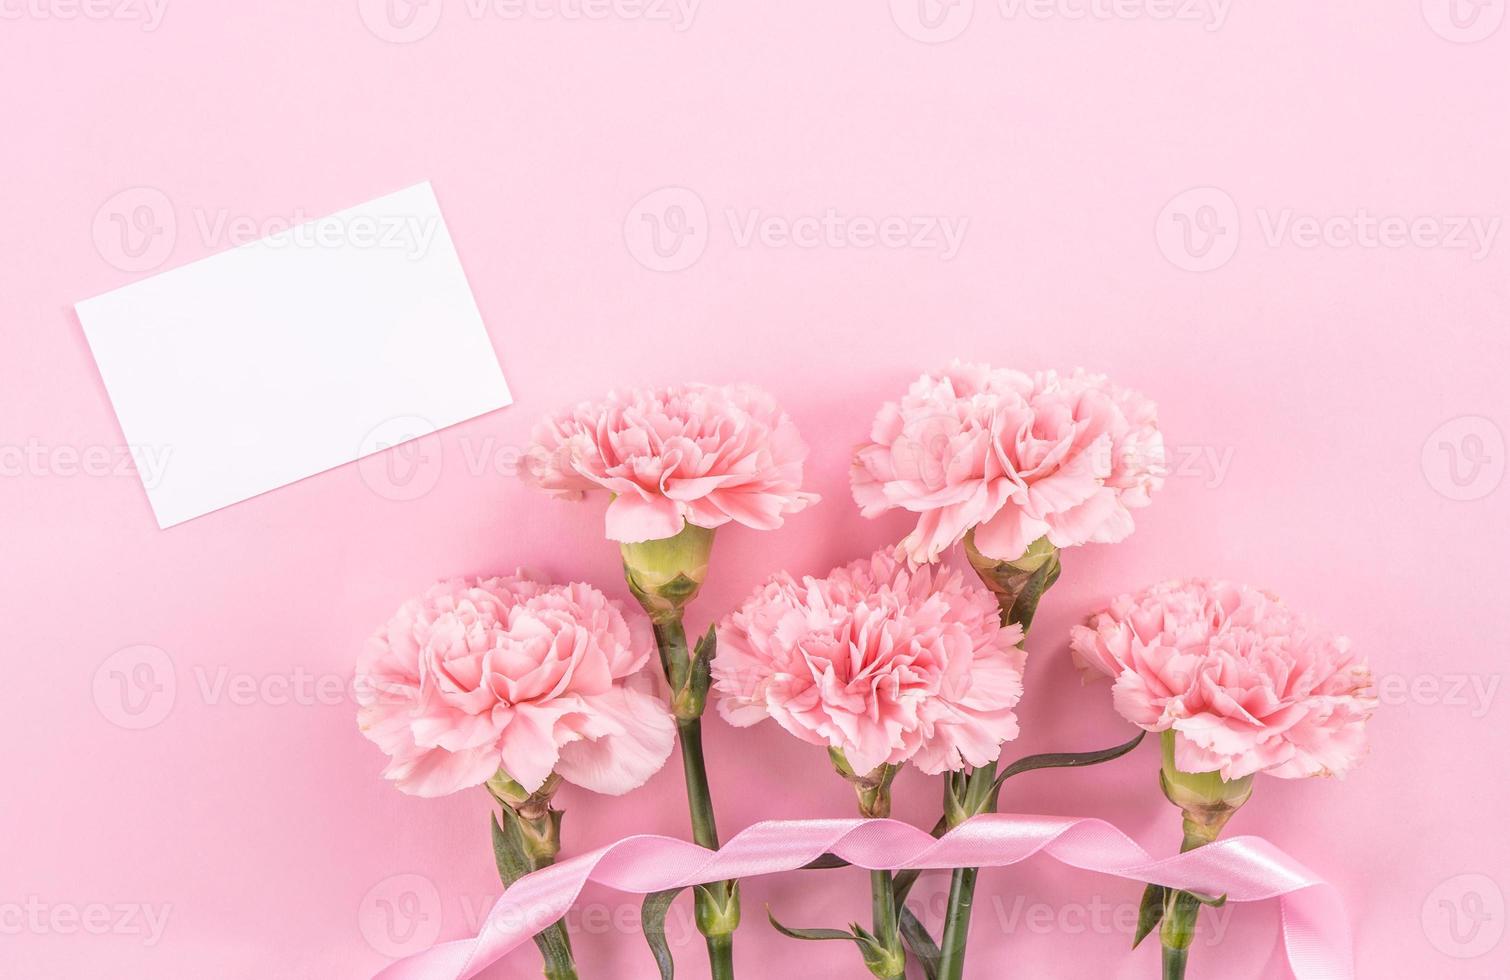 vista superior, capa plana, espacio de copia, primer plano, maqueta, concepto de diseño de agradecimiento del día de la madre. hermosos claveles de color rosa bebé frescos y florecientes aislados en un fondo rosa brillante foto